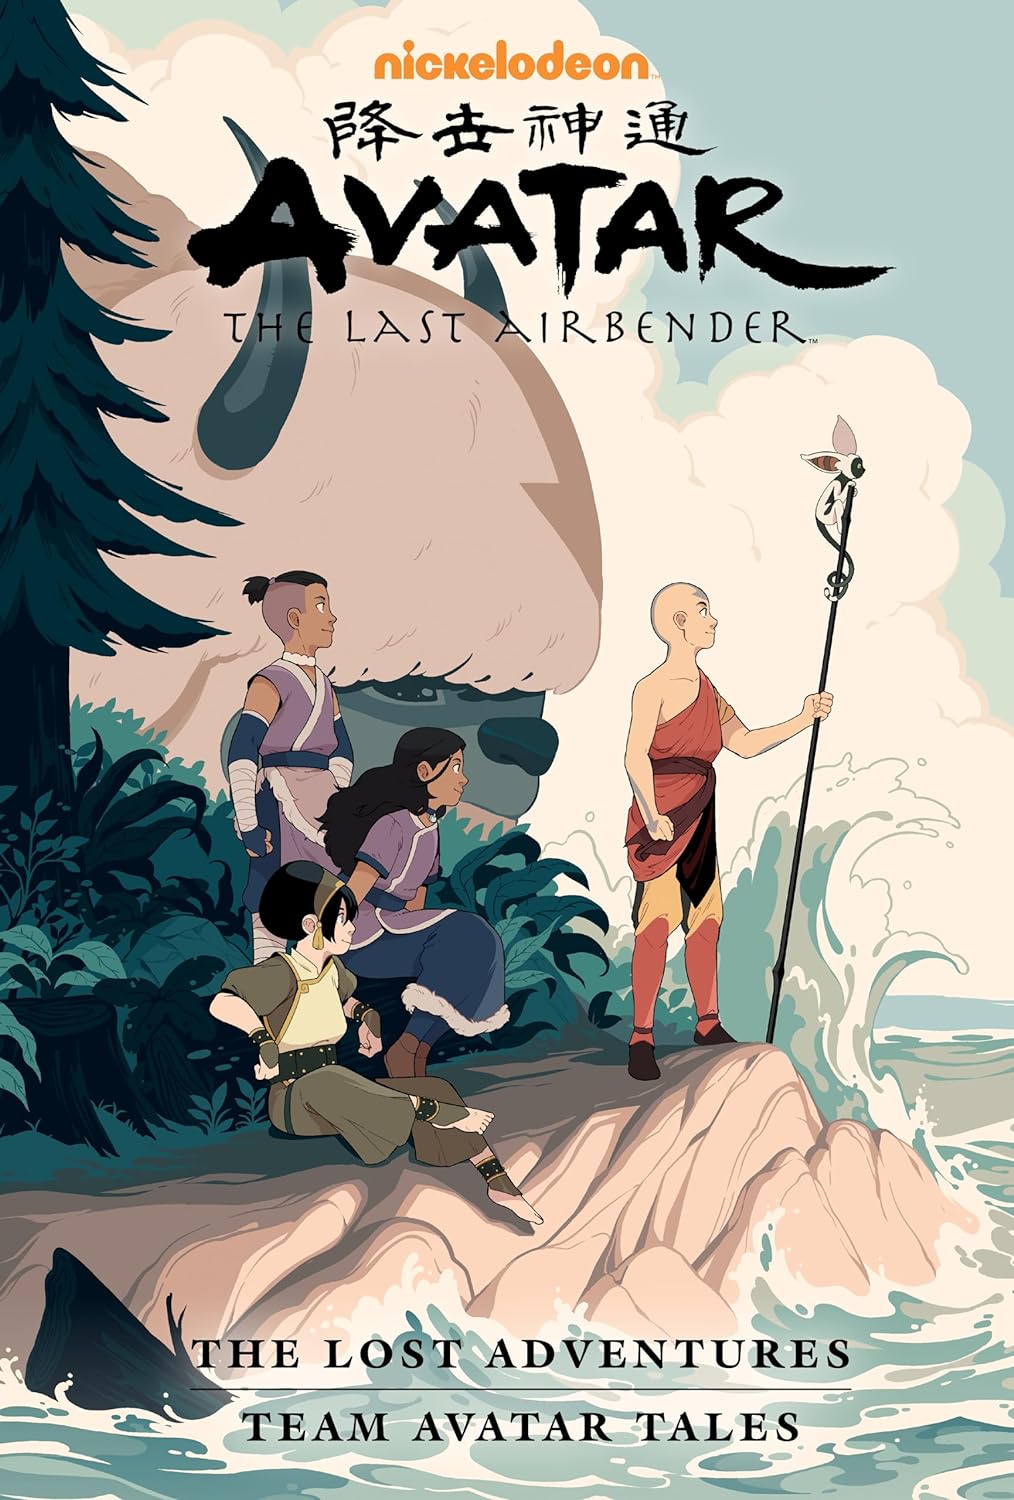 Avatar: The Last Airbender - The Lost Adventures and Team Avatar Tales | Gene Luen Yang, Dave Scheidt, Sara Goetter